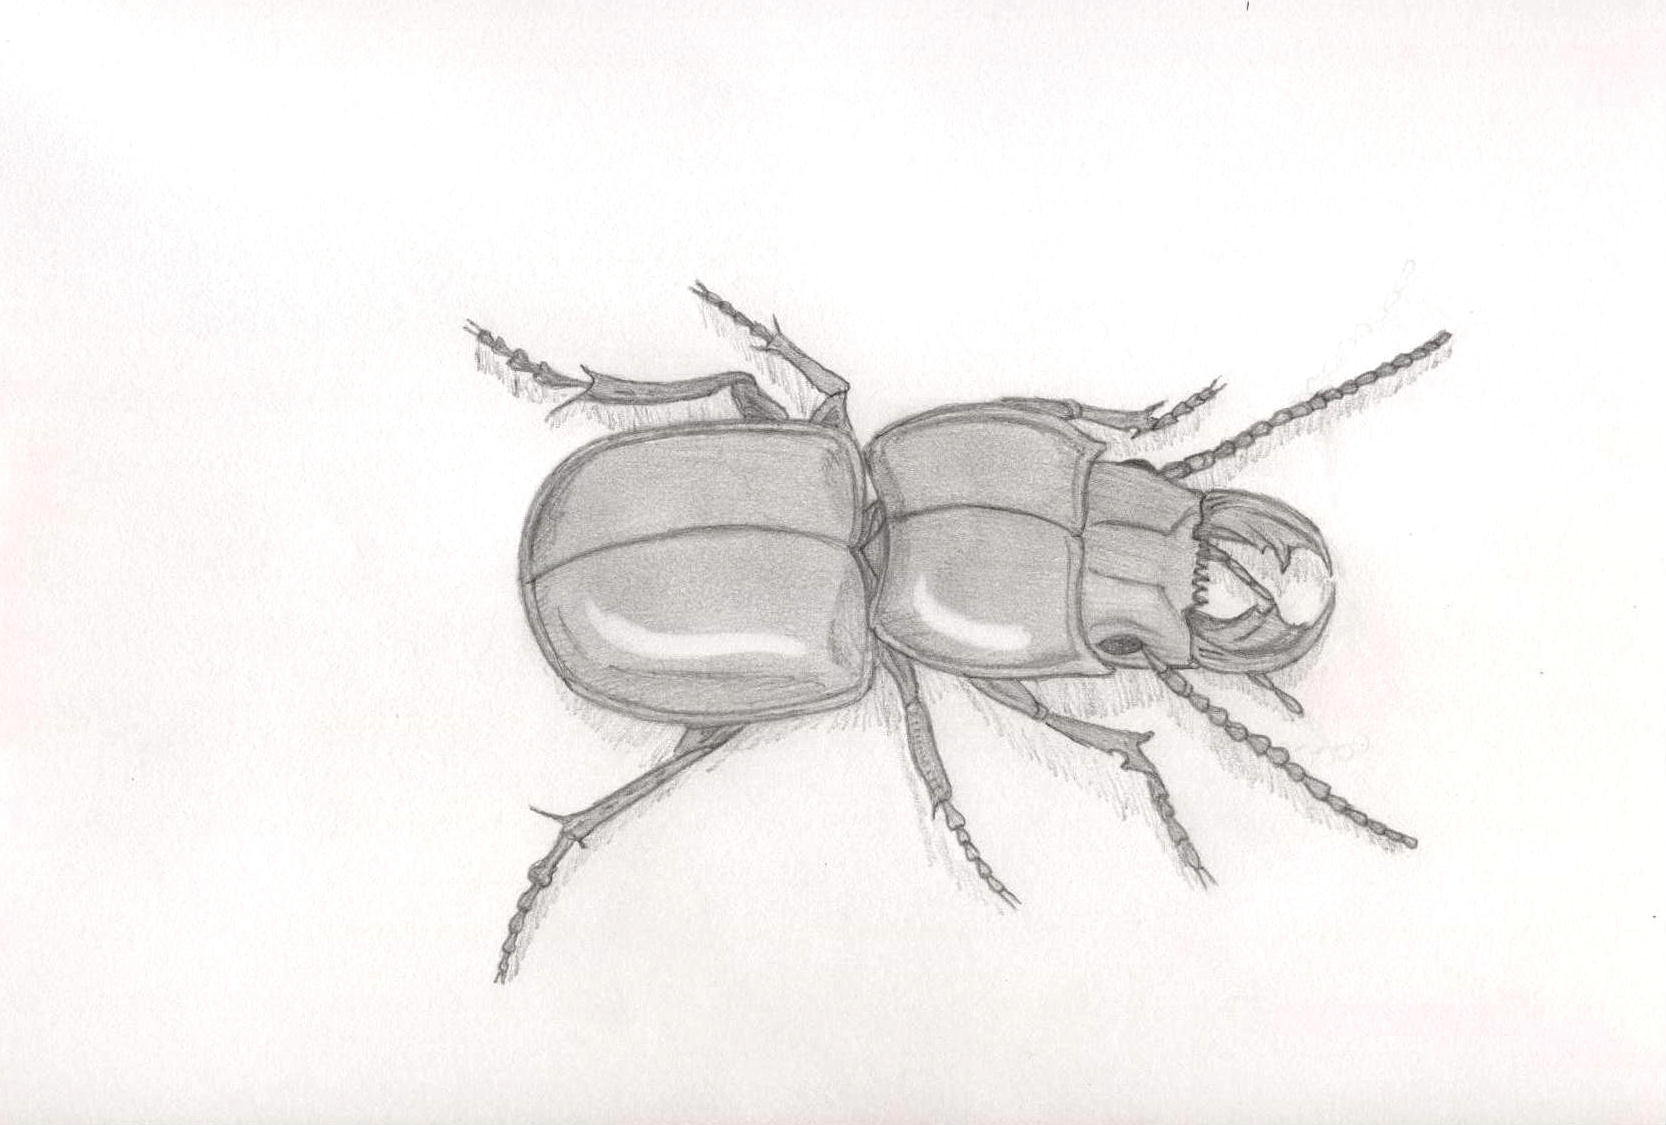 Black Beetle by Ran_The_Hyena